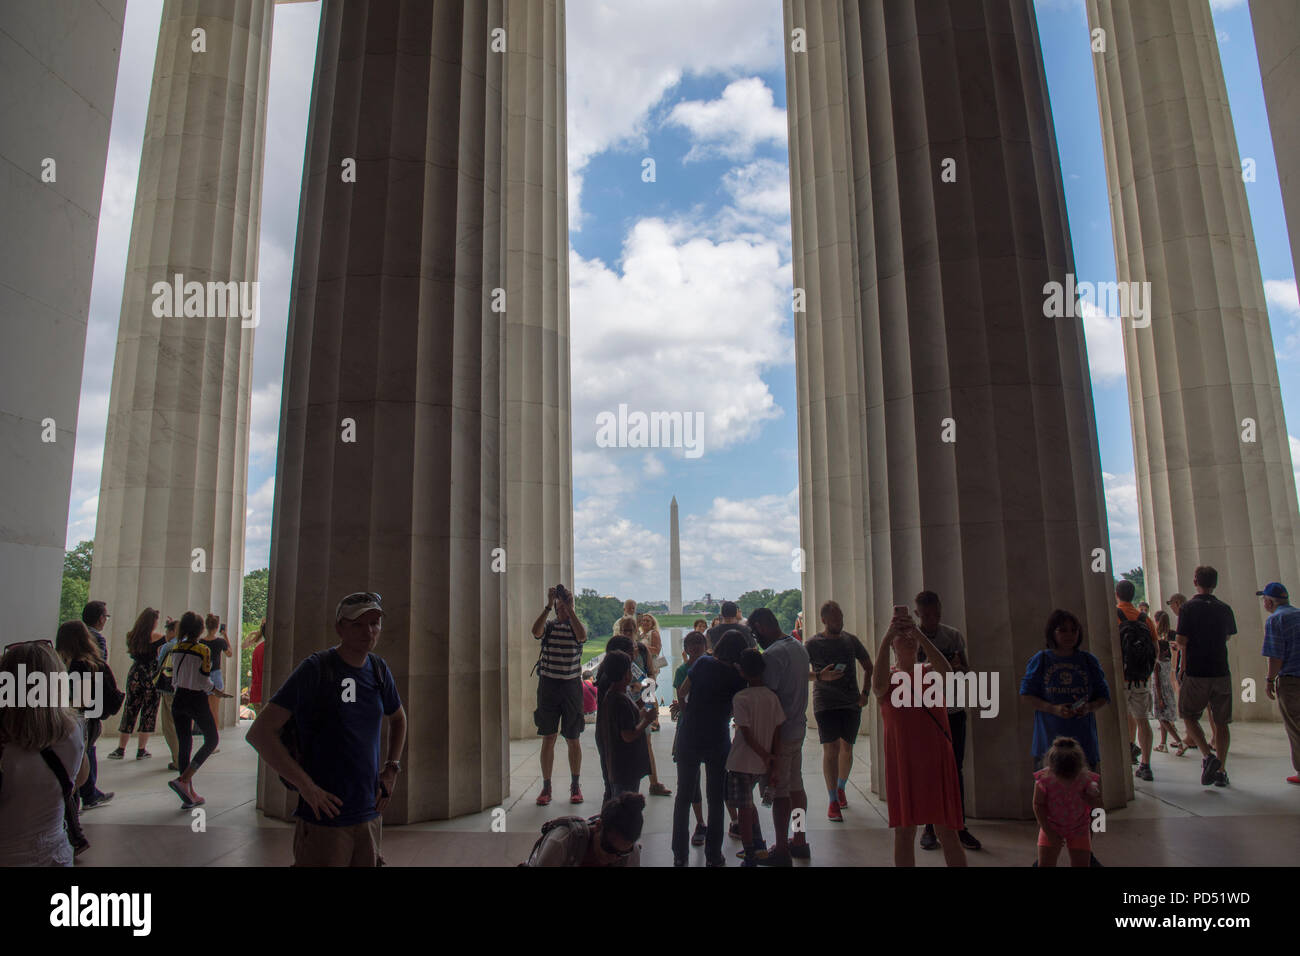 Alte colonne del Lincoln Memorial salire oltre i visitatori in un giorno d'estate. Il Monumento a Washington e il blu del cielo con il bianco puffy nuvole sono in background. Foto Stock